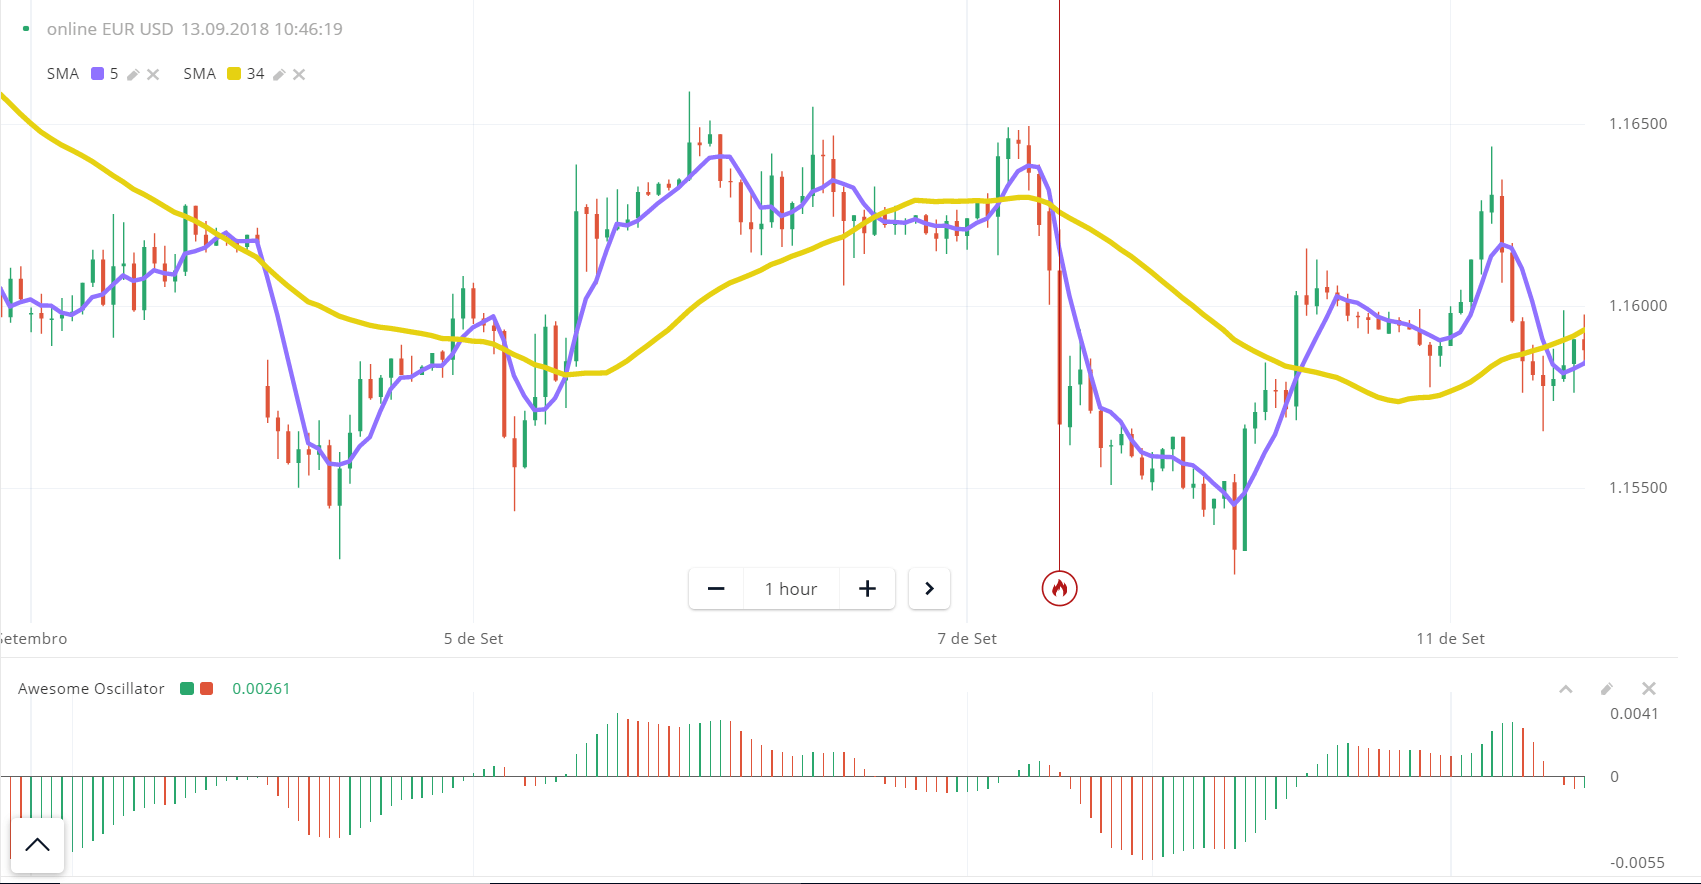 مخطط الشموع اليابانية online EUR USD تحته awesome oscillator بأعمدة خضراء و حمراء و SMA مع منحنيات صفراء و بنفسجية